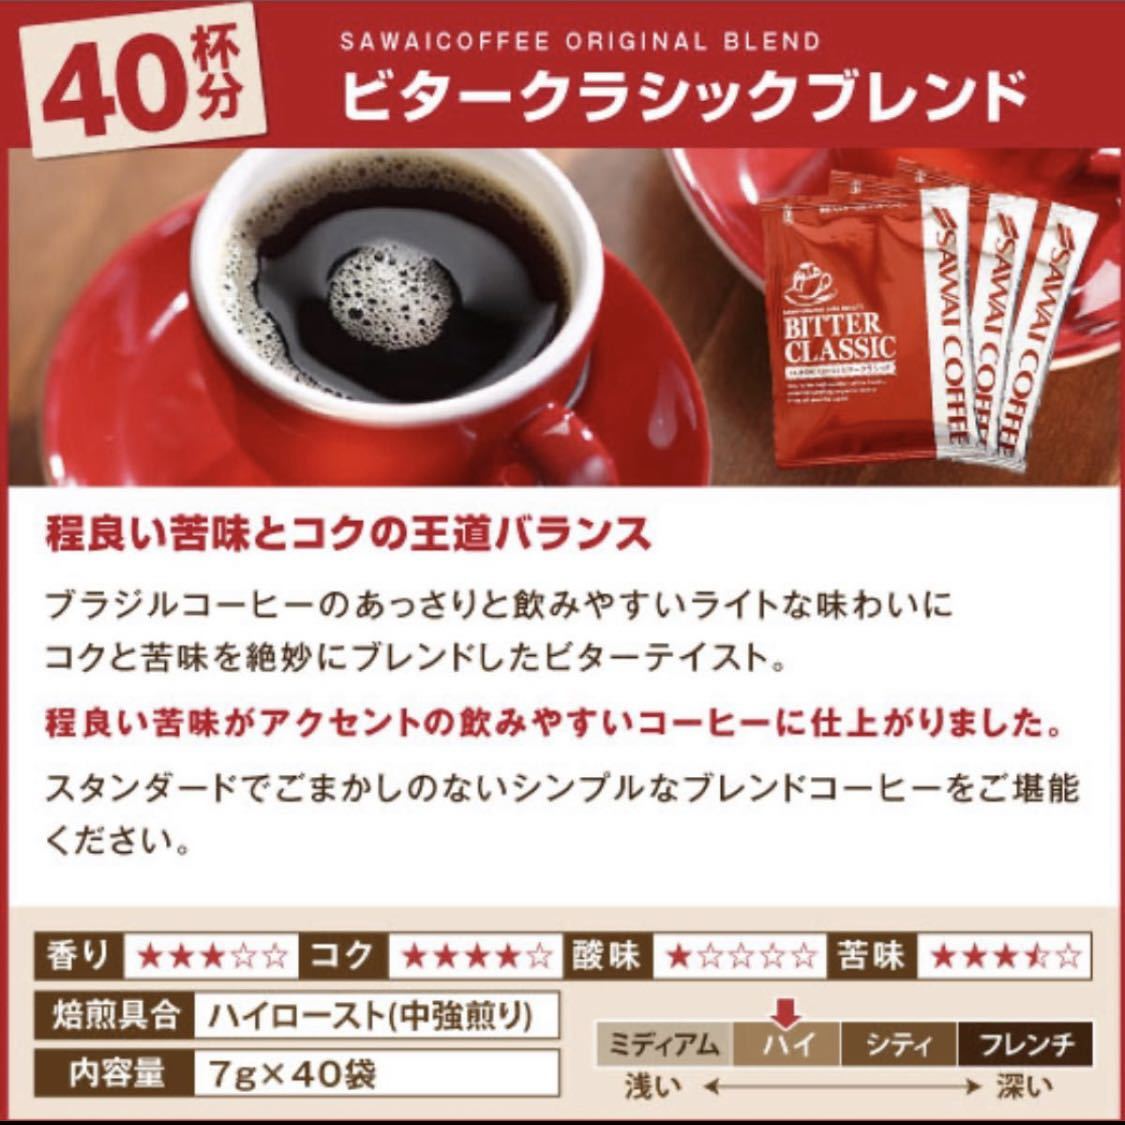 【ビタークラシック】 澤井珈琲 ハイクオリティコーヒー ドリップパック 40袋の画像4